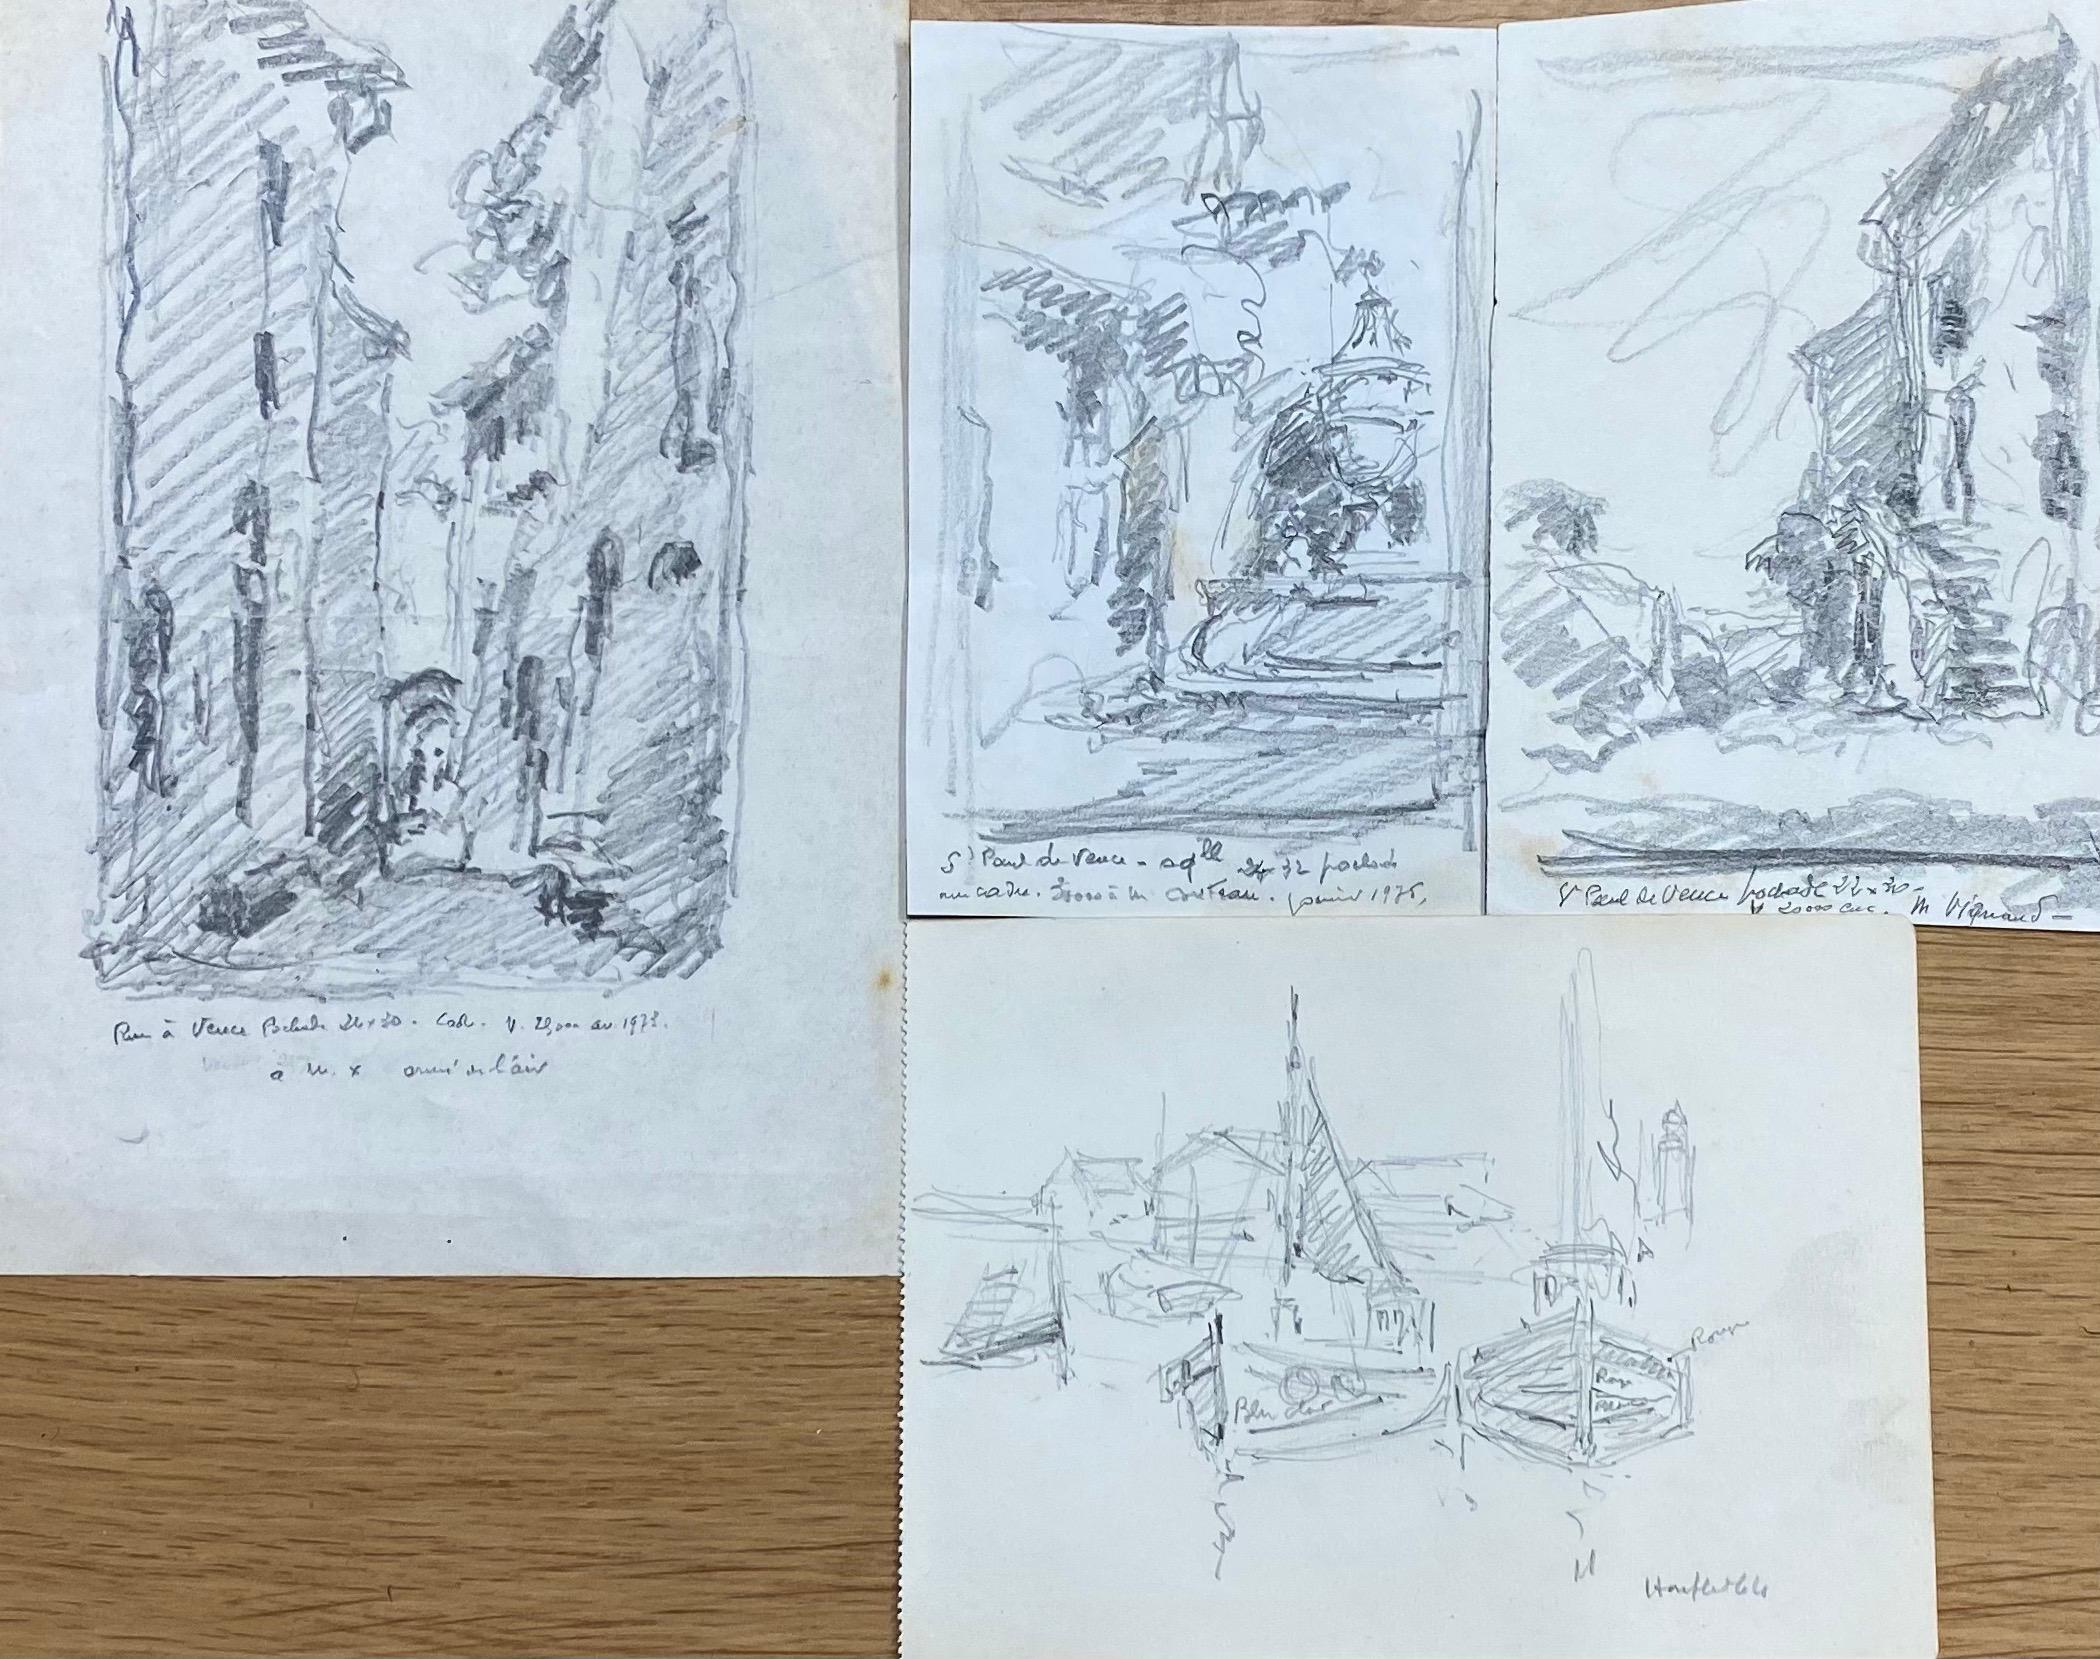 Satz von 4 Zeichnungen
von Camille Meriot (Französisch 1887-1975) 
unterzeichnet 
Bleistiftzeichnungen auf Papier
Zeichnungsgrößen von links nach rechts
Papier 1: 8,25 x 5,25 Zoll
Papier 2: 5,75 x 3,75 Zoll
Papier 3: 6 x 4 Zoll
Papier 4 (untere